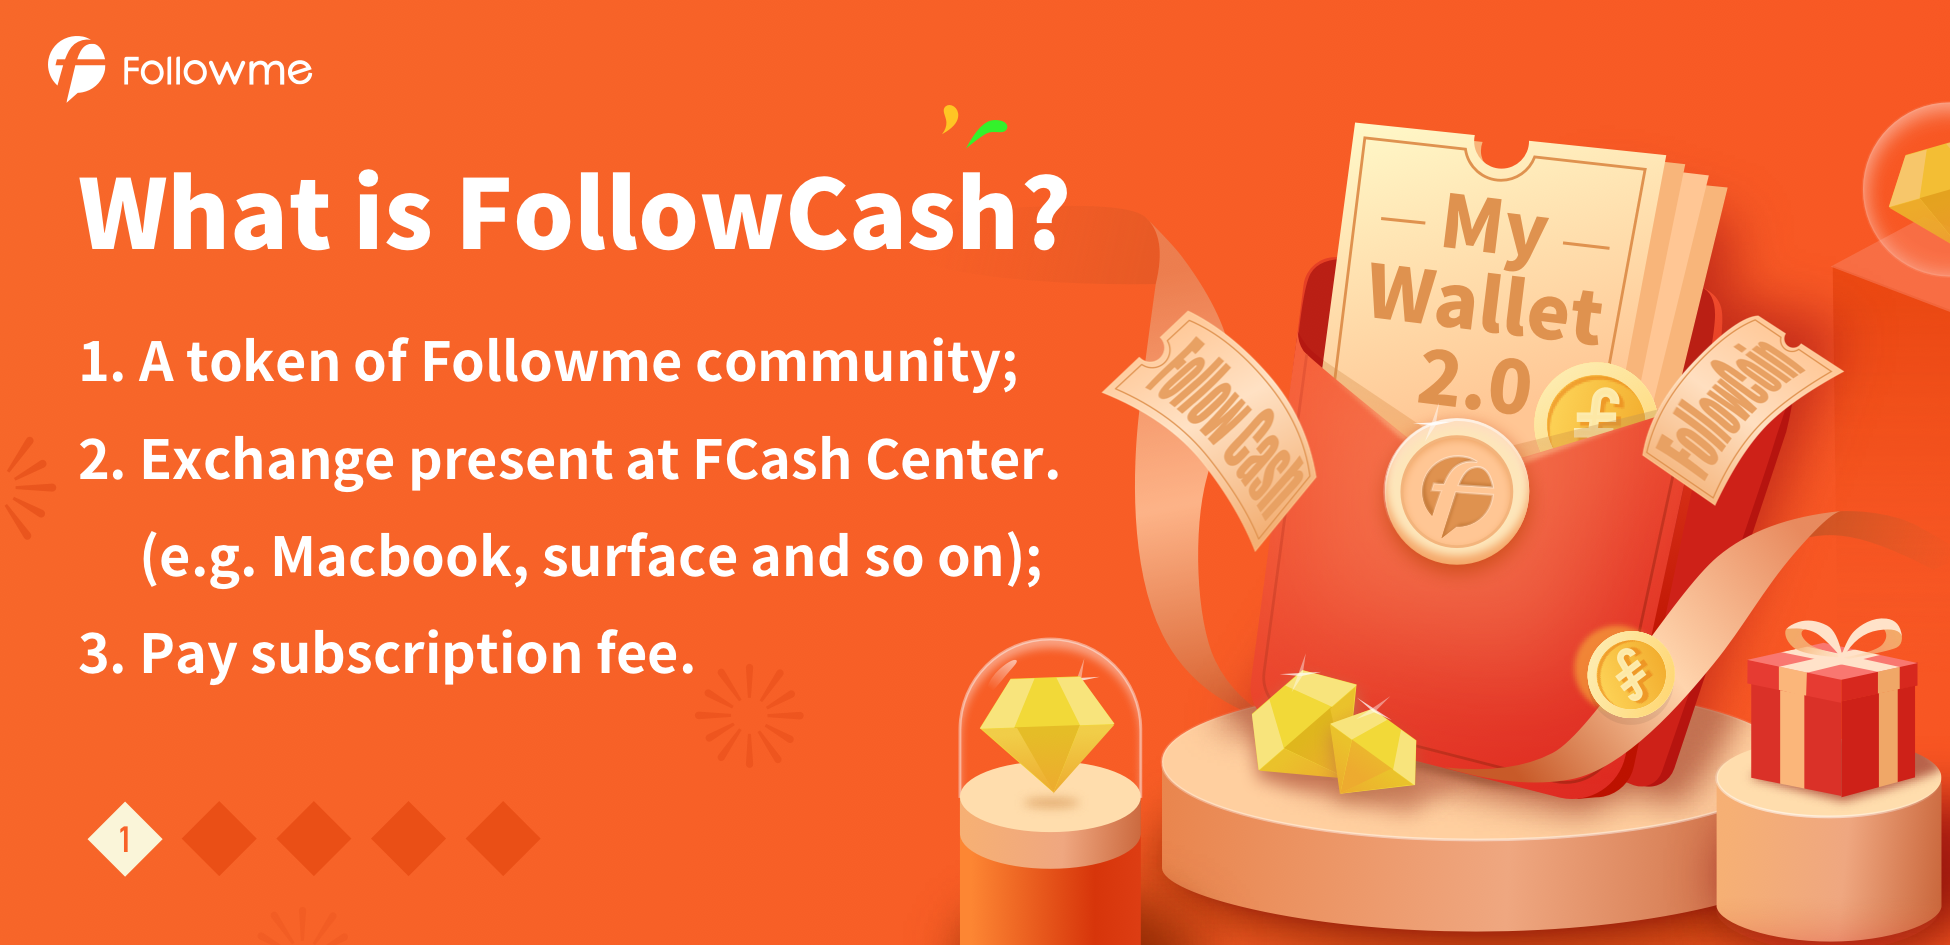 Followme Community Bonus---FollowCash